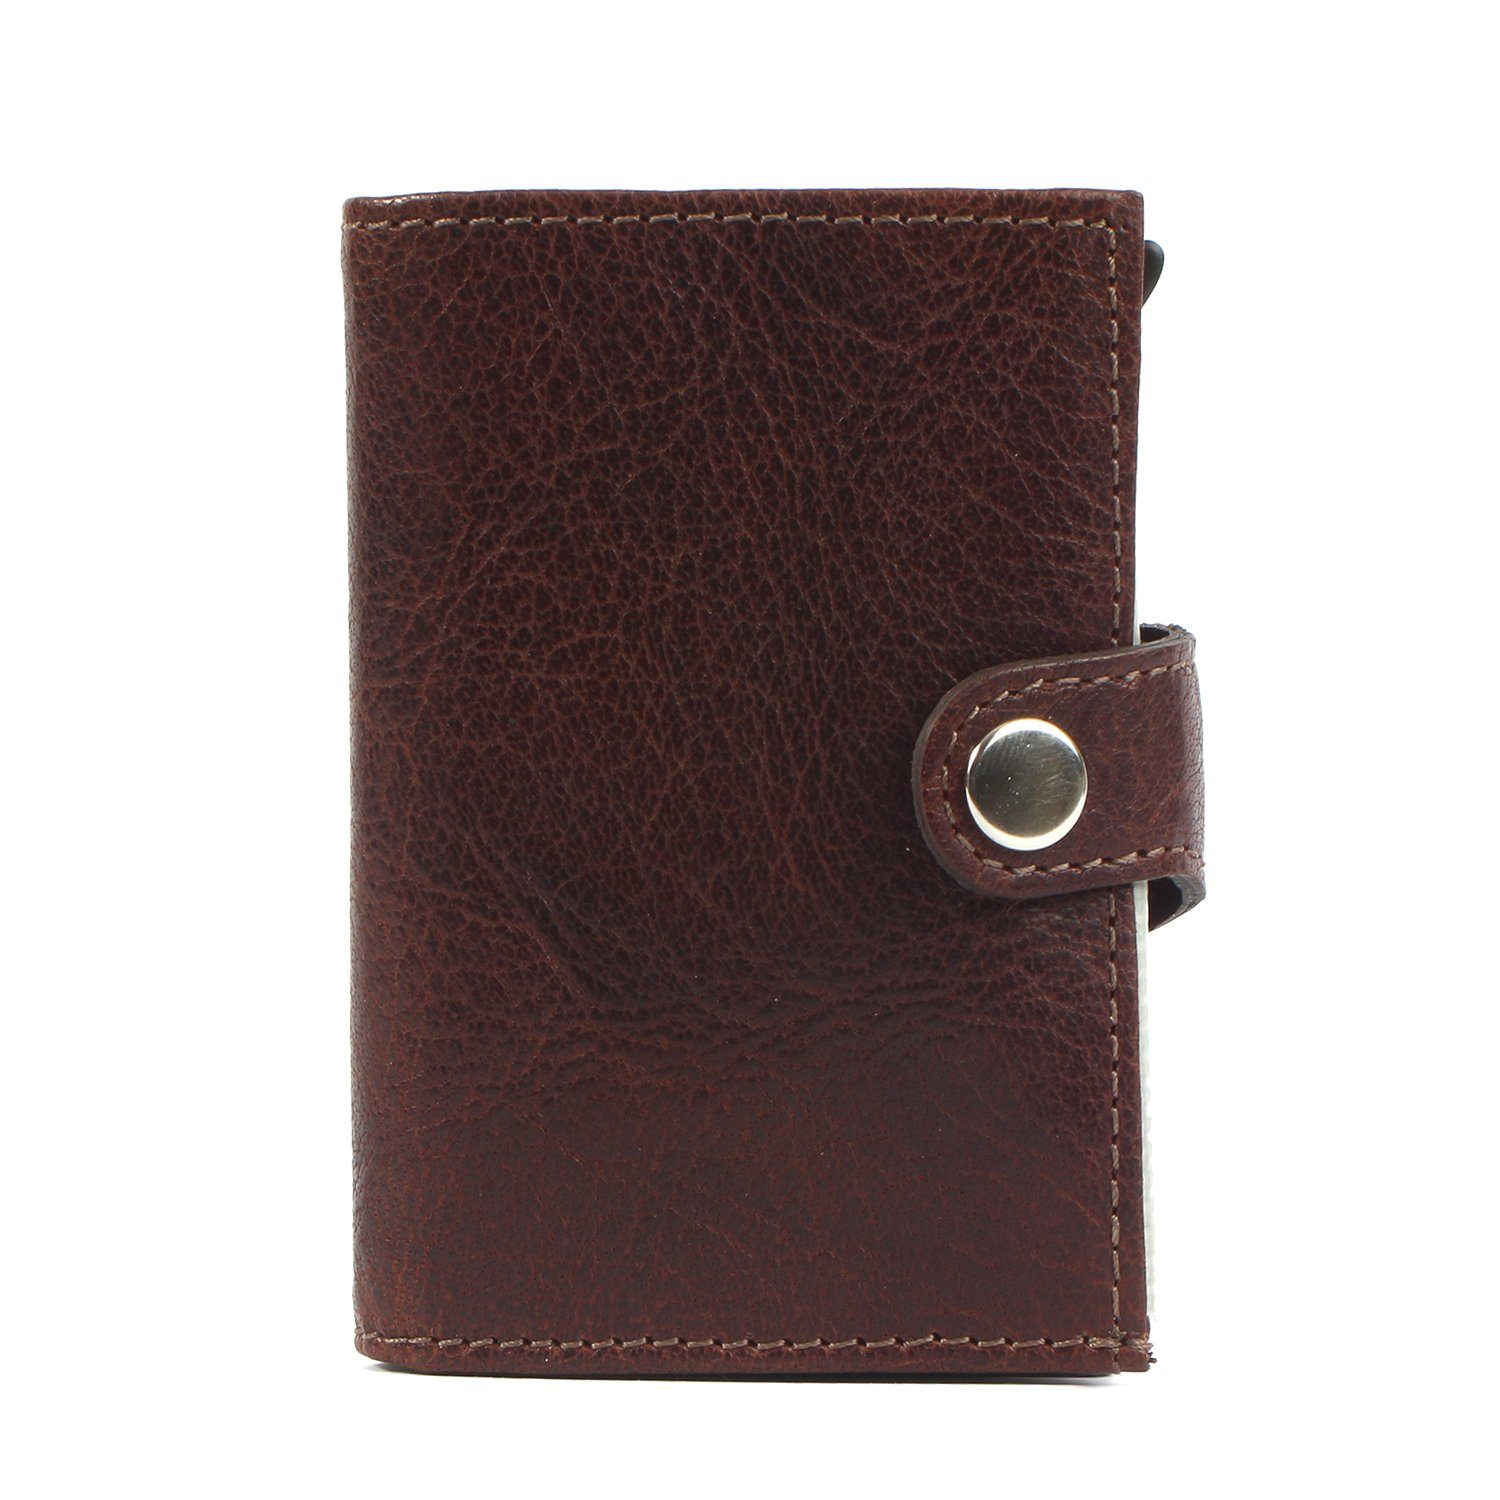 Margelisch Mini Geldbörse noonyu single Leder Kreditkartenbörse Upcycling leather, brown aus